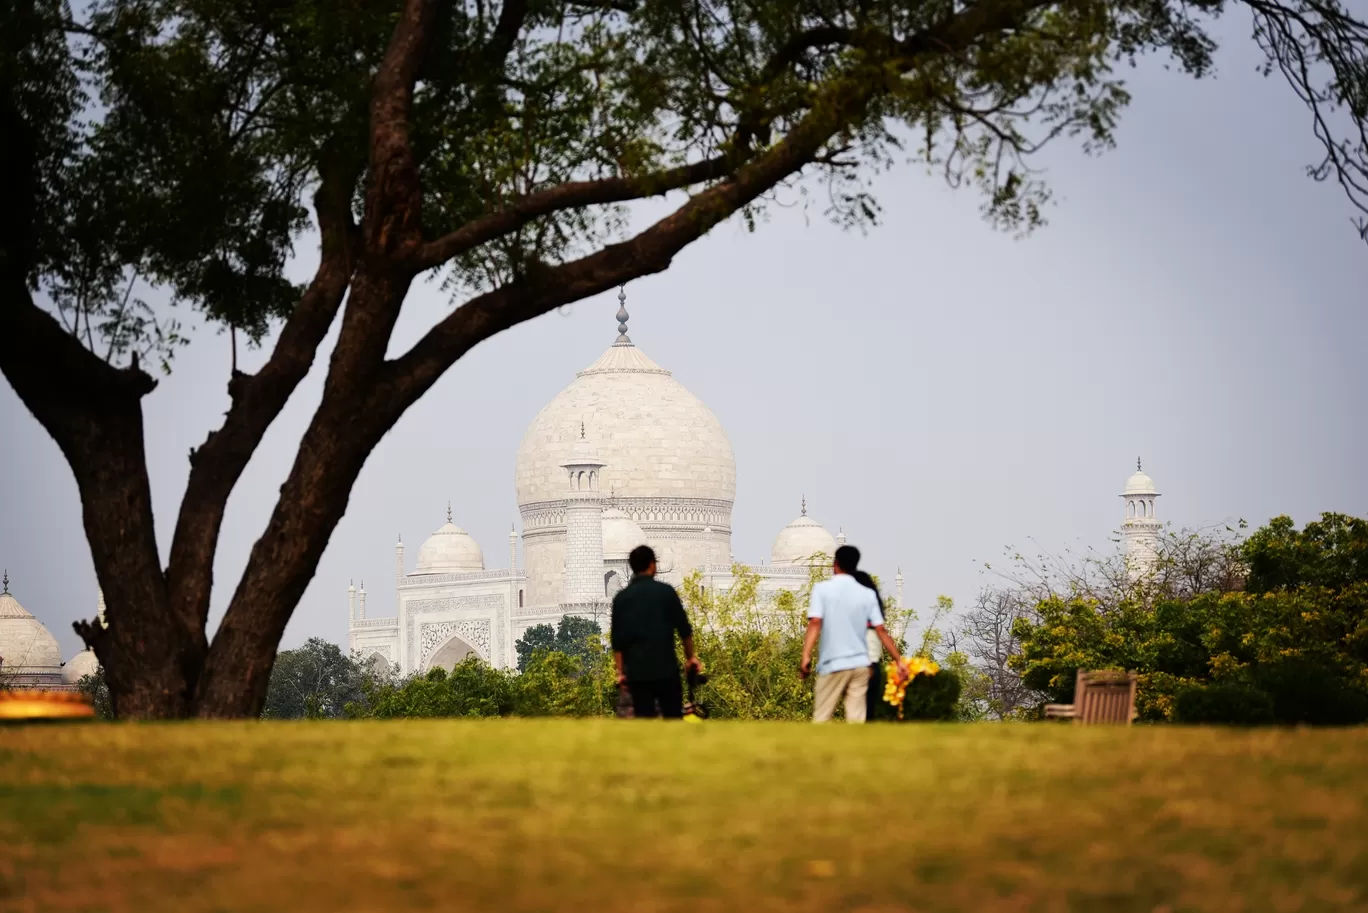 Photo of Taj Mahal By Pankaj Ghildiyal